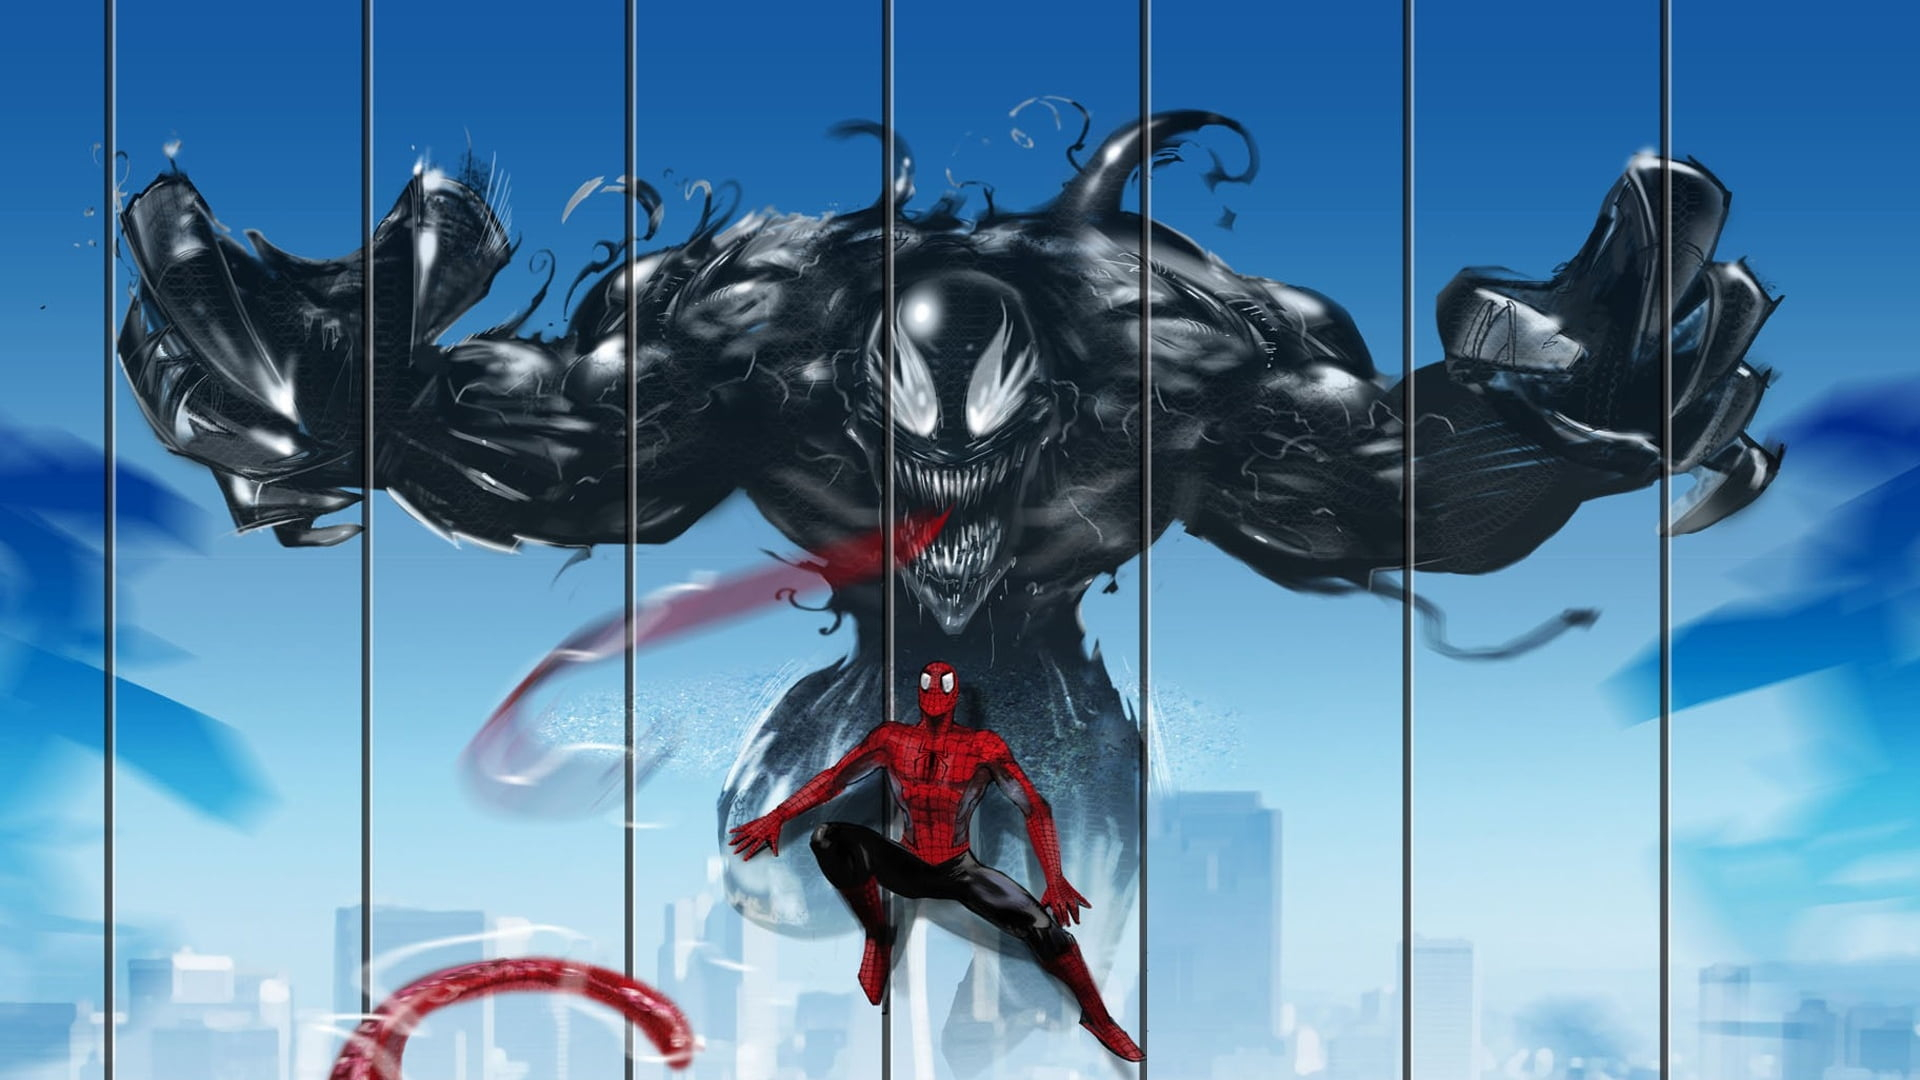 Marvel Venom and Spider-Man digital wallpaper, Marvel Comics